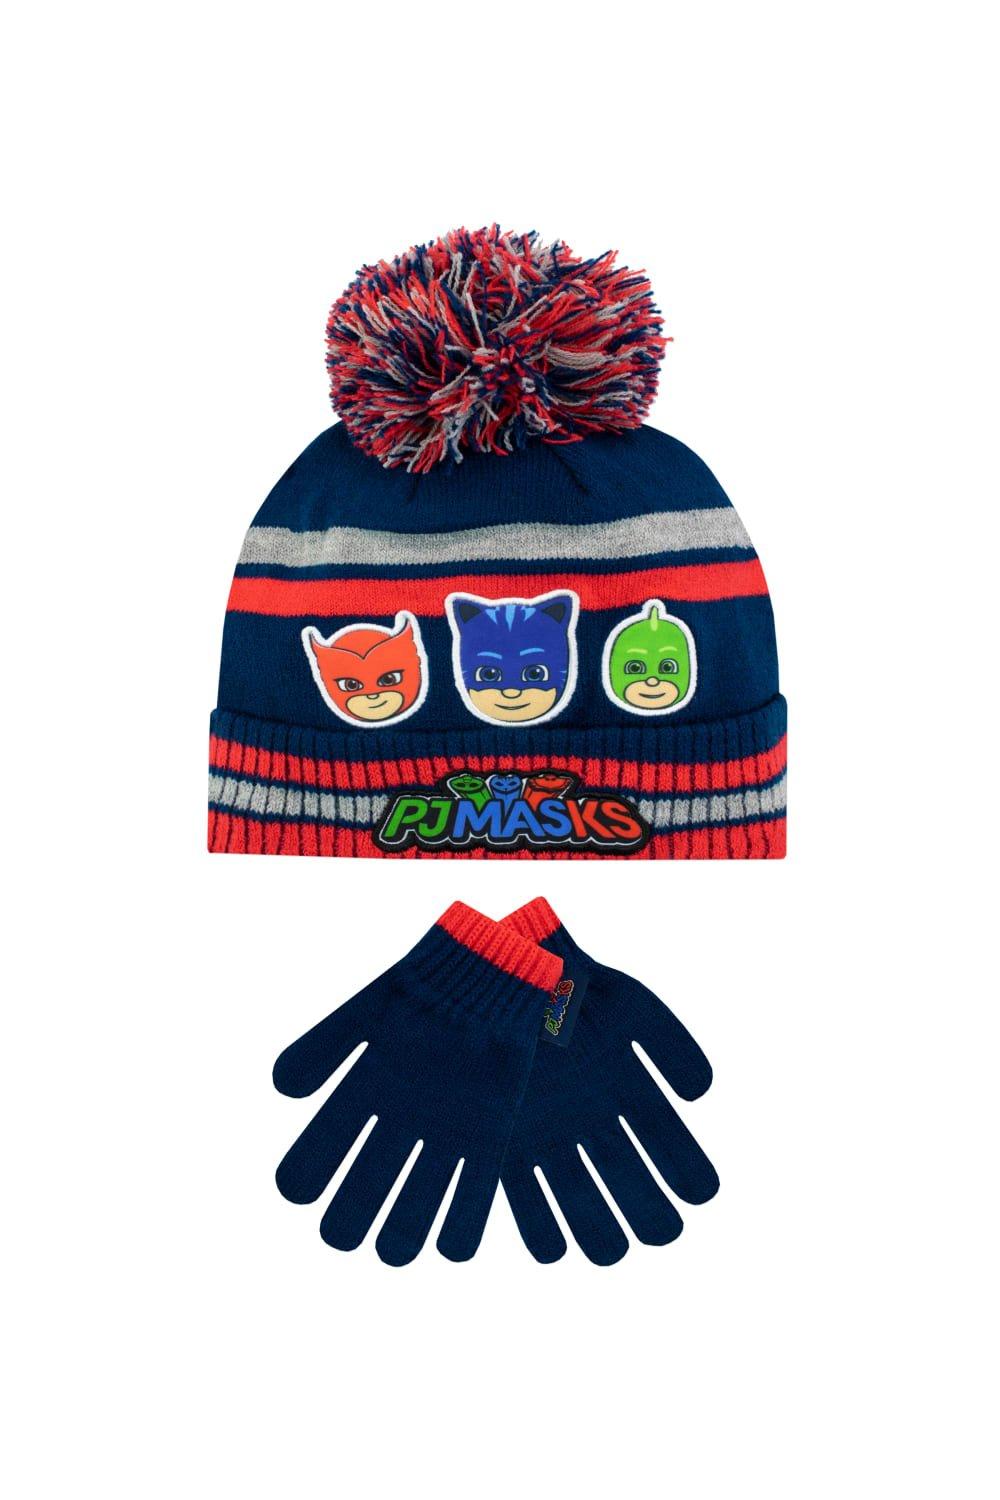 шапка modniki для мальчиков и девочек с помпоном р56 темно серо черная Детский комплект шапки и перчаток PJ Masks, синий